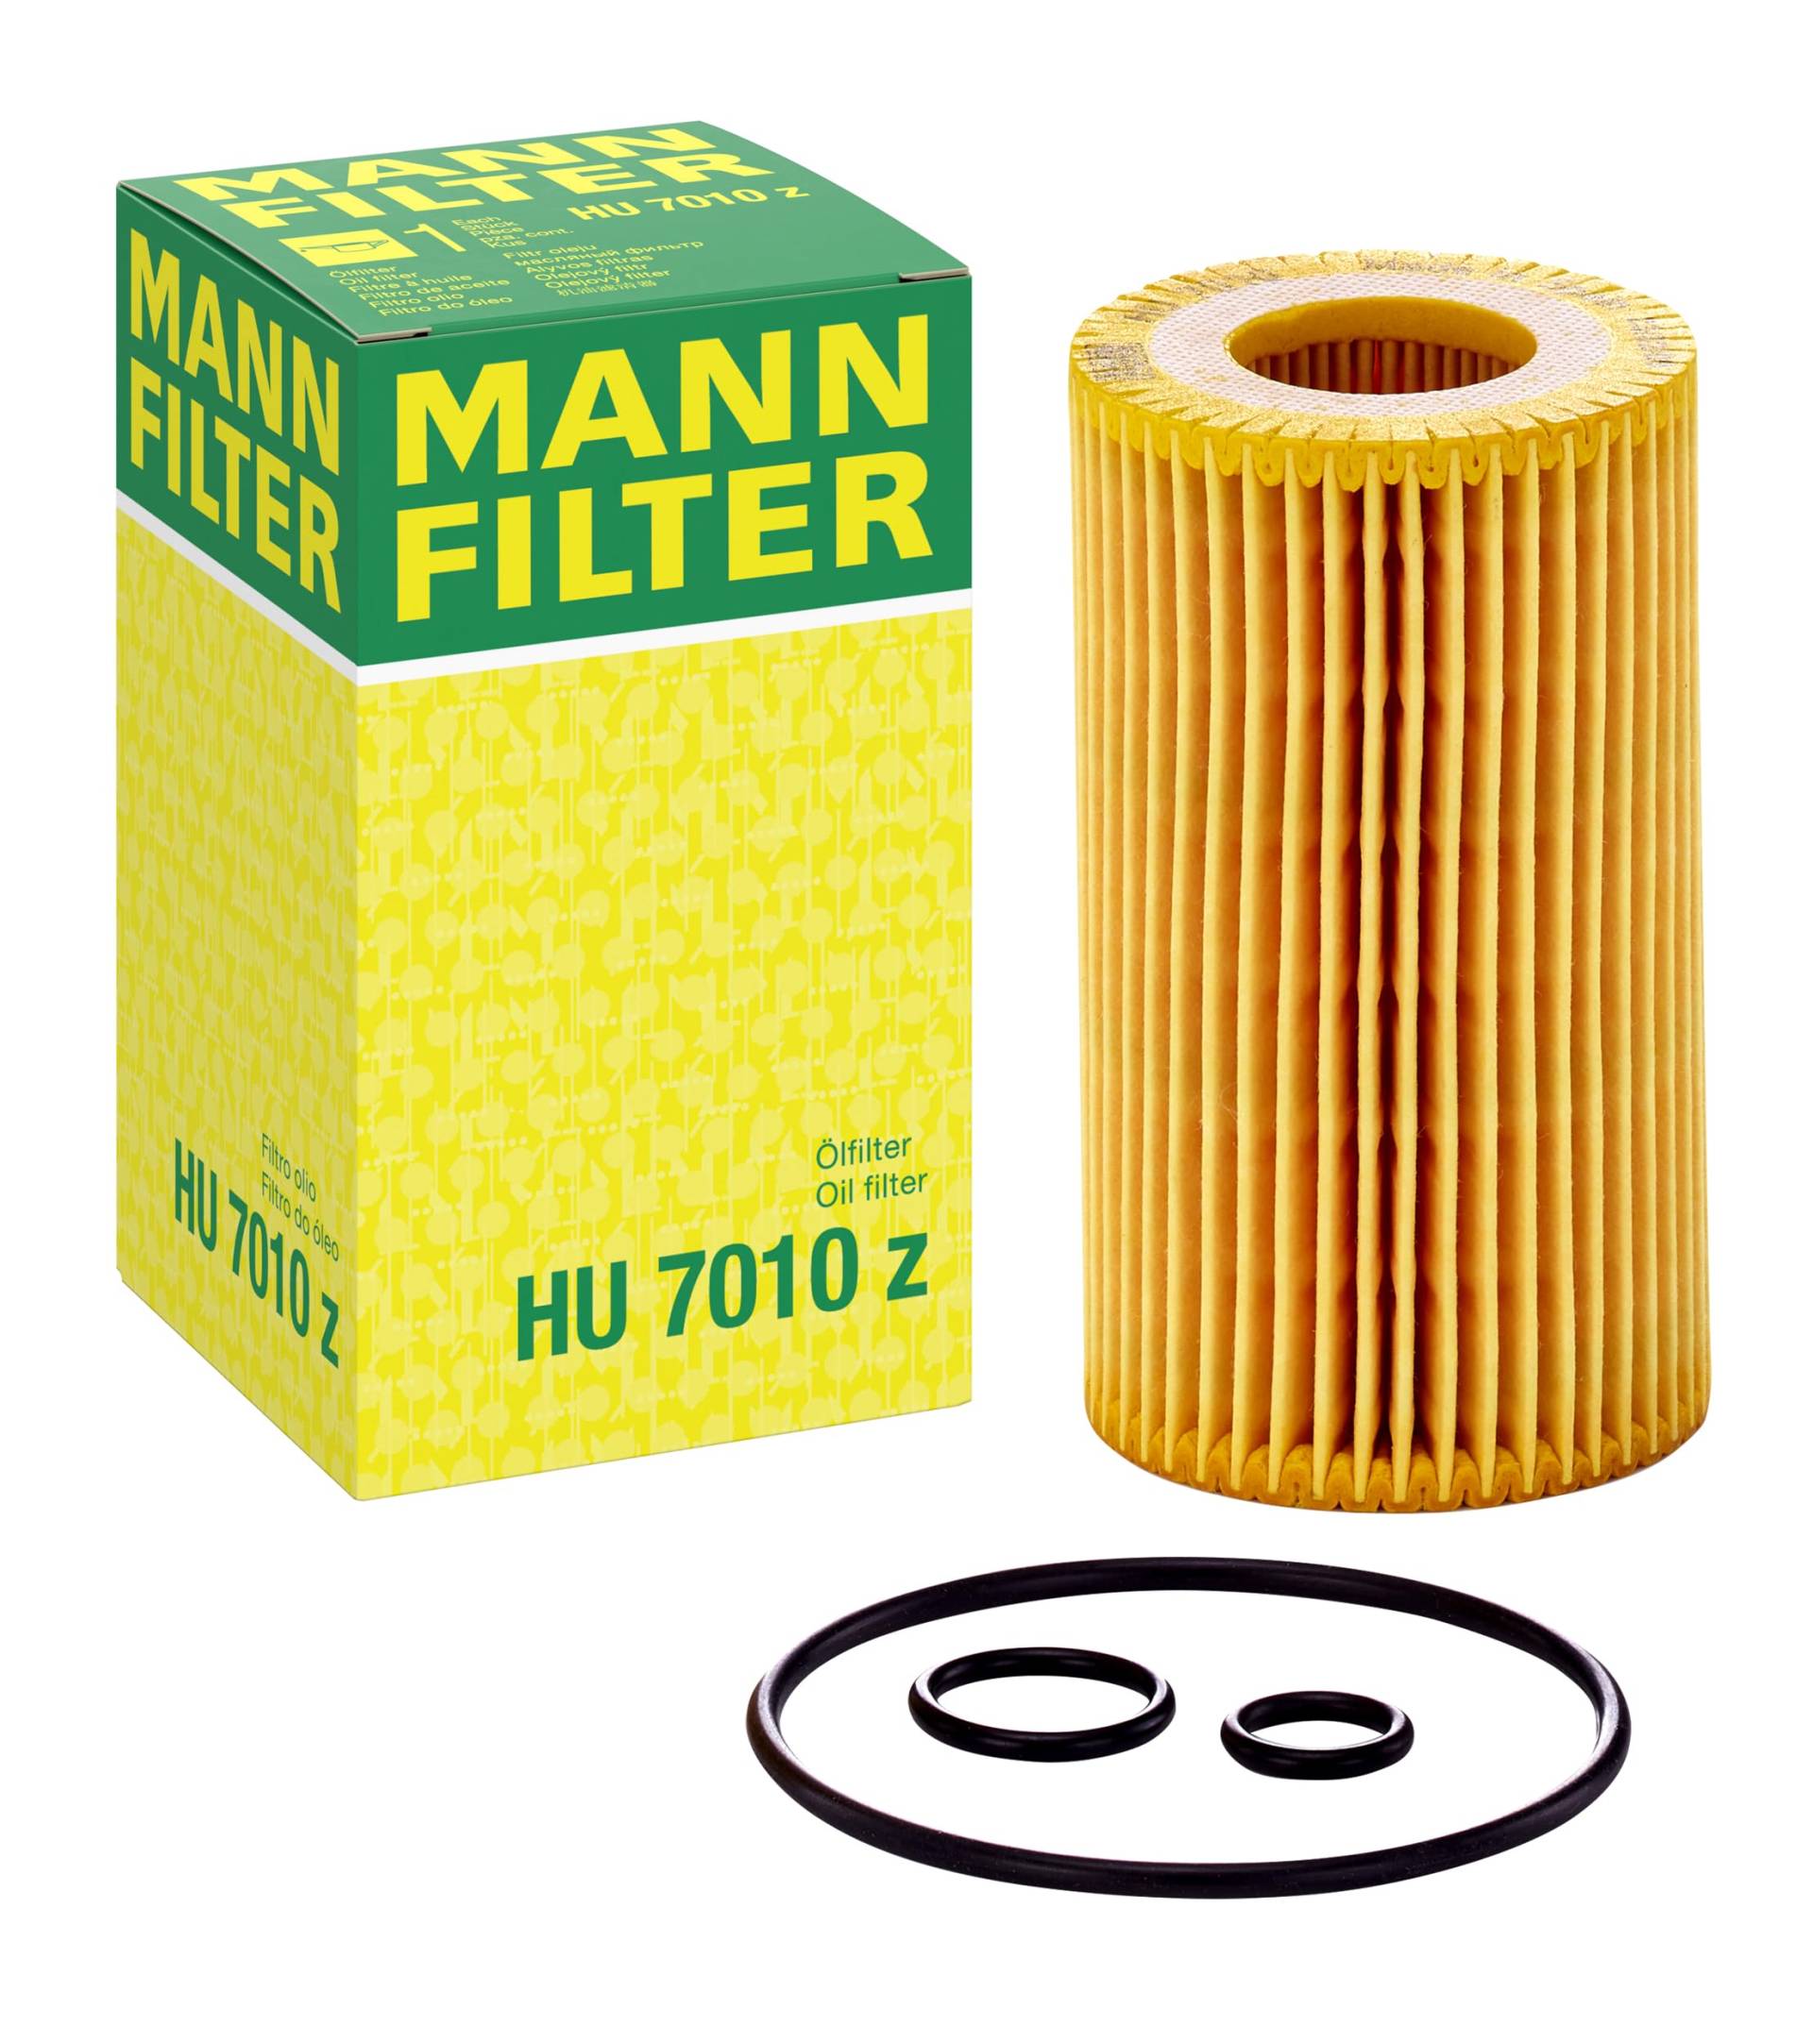 MANN-FILTER HU 7010 Z Ölfilter – Ölfilter Satz mit Dichtung / Dichtungssatz – Für PKW und Kleinbusse von MANN-FILTER